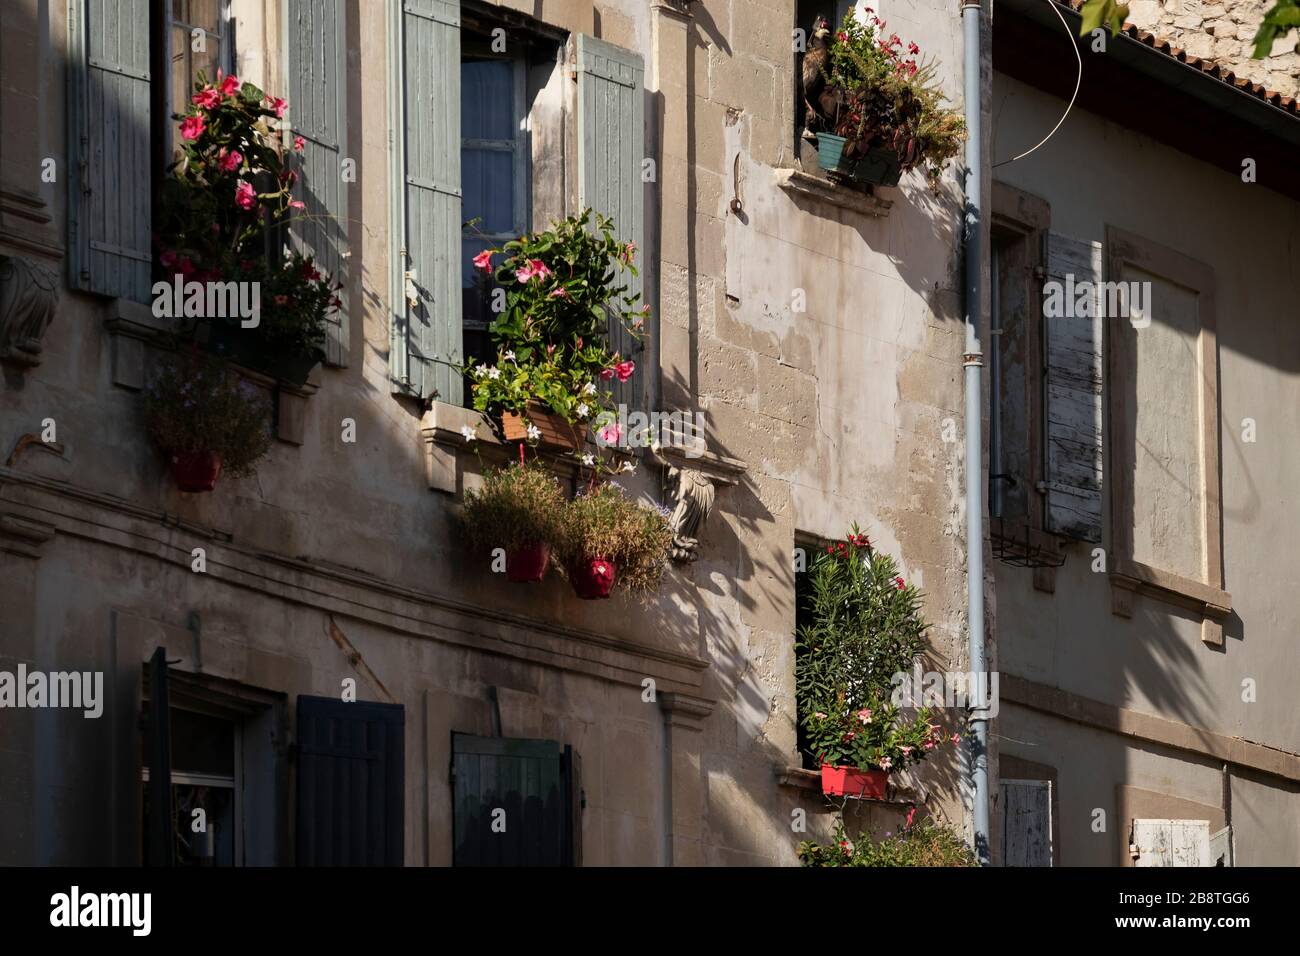 Arles (Provenza, Occitània, Francia) Foto Stock